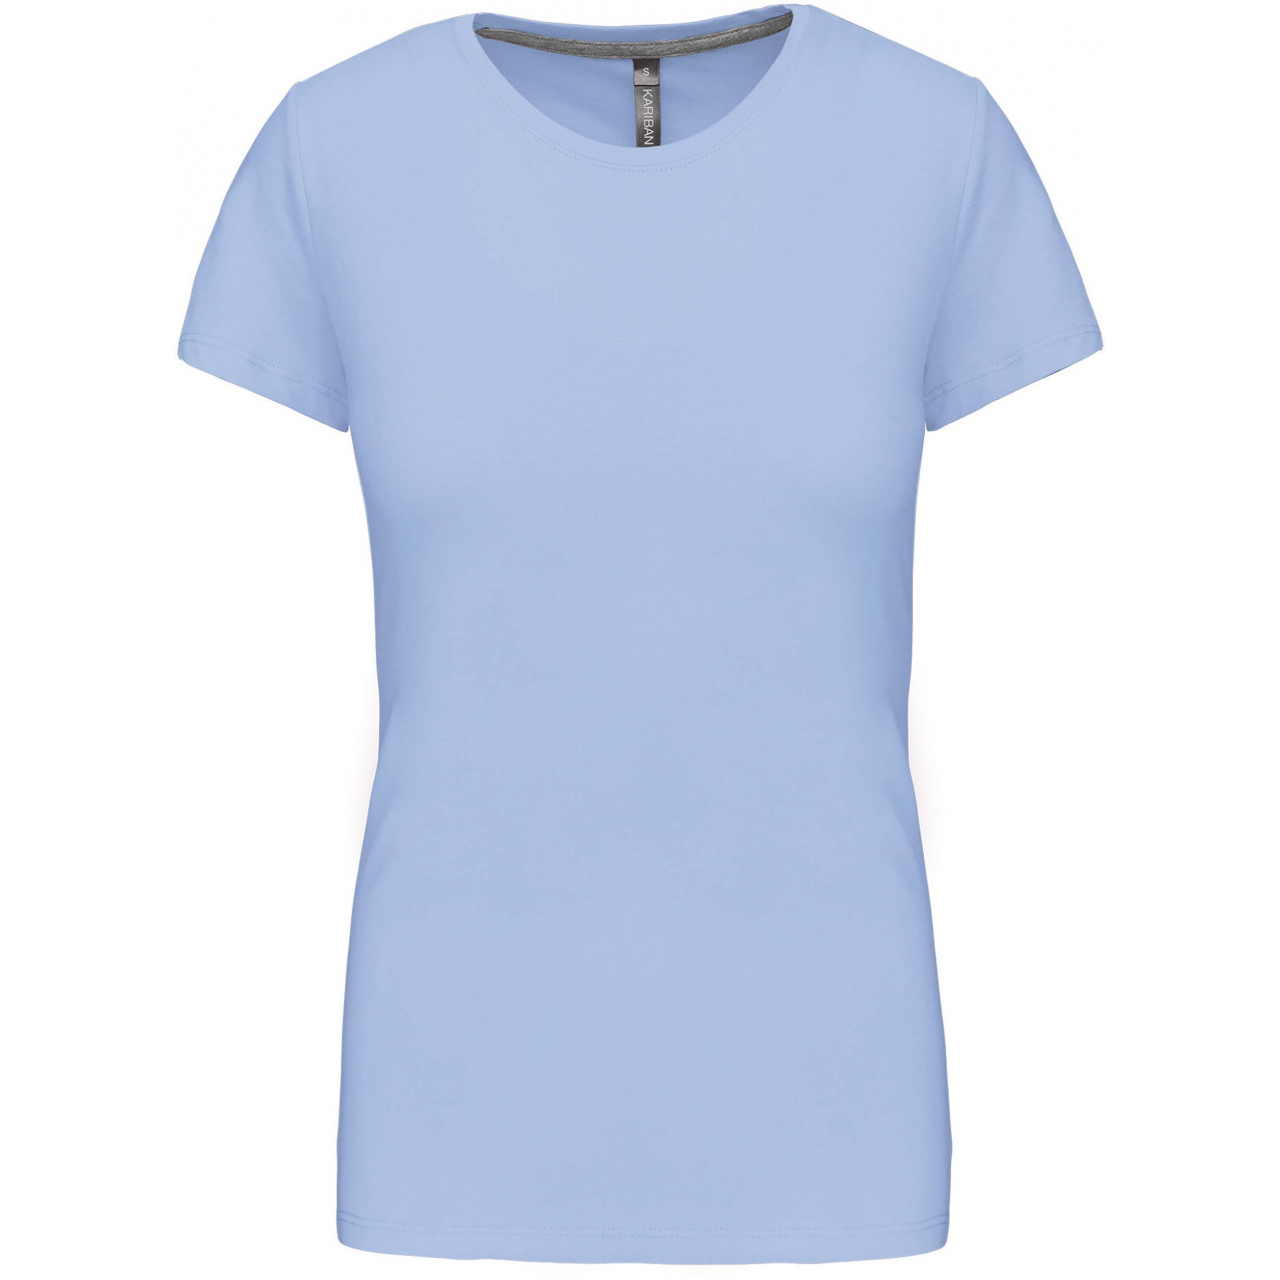 Dámské tričko Kariban s krátkým rukávem - světle modré, L